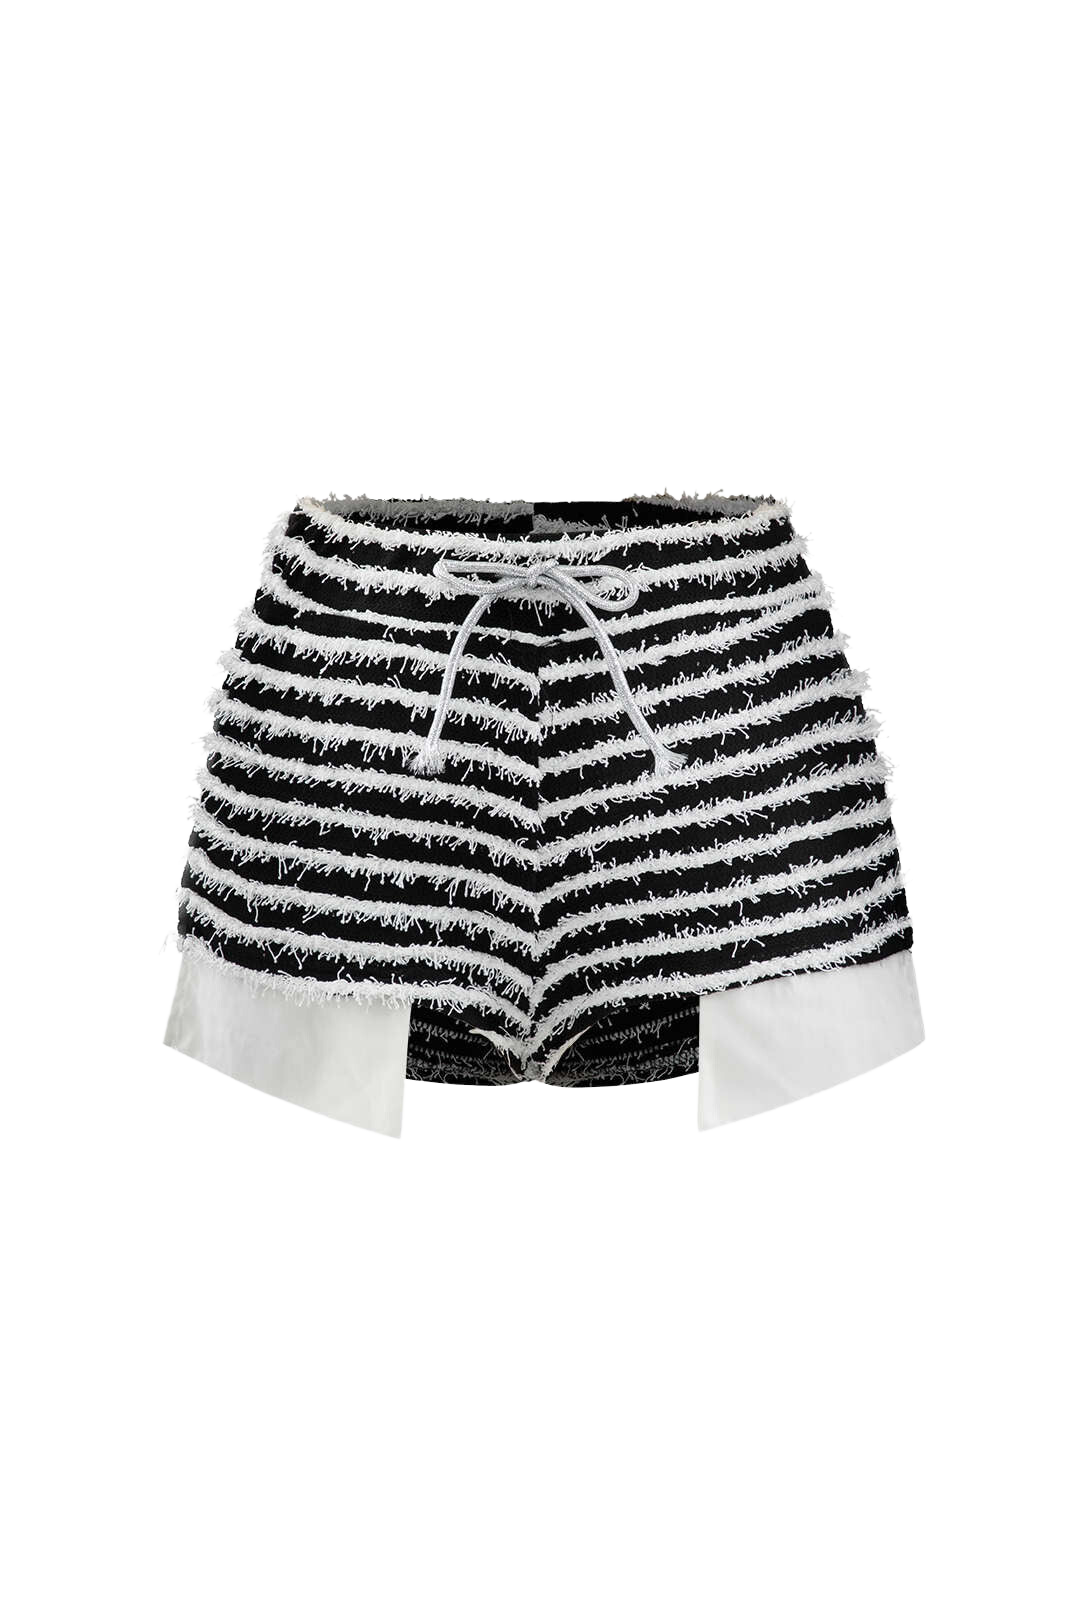 A&A Striped Zebra Shorts